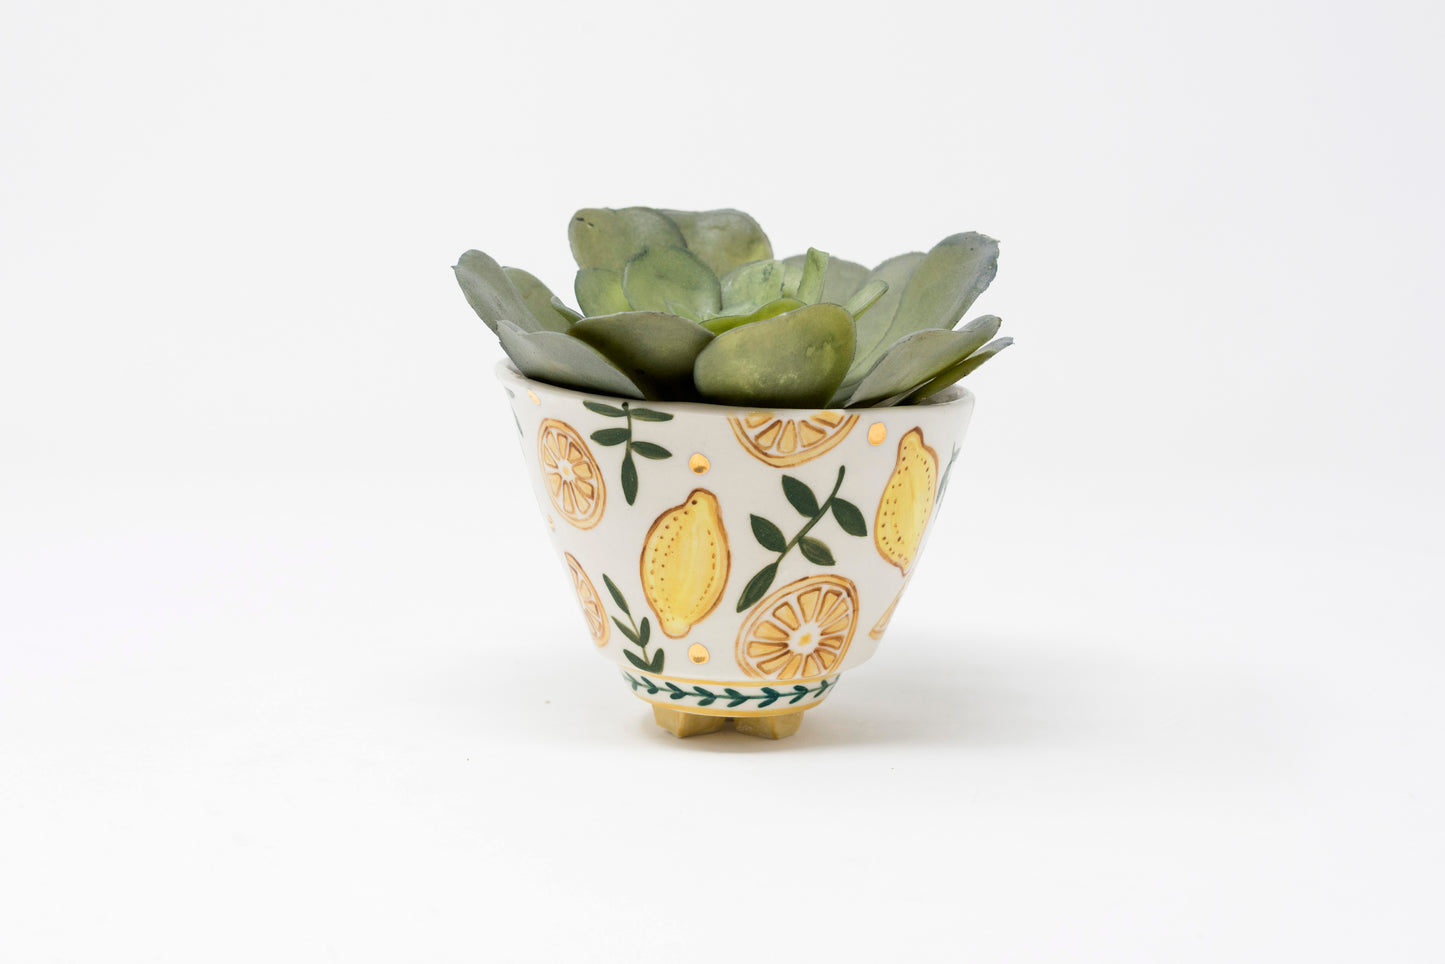 Small Porcelain plant pots